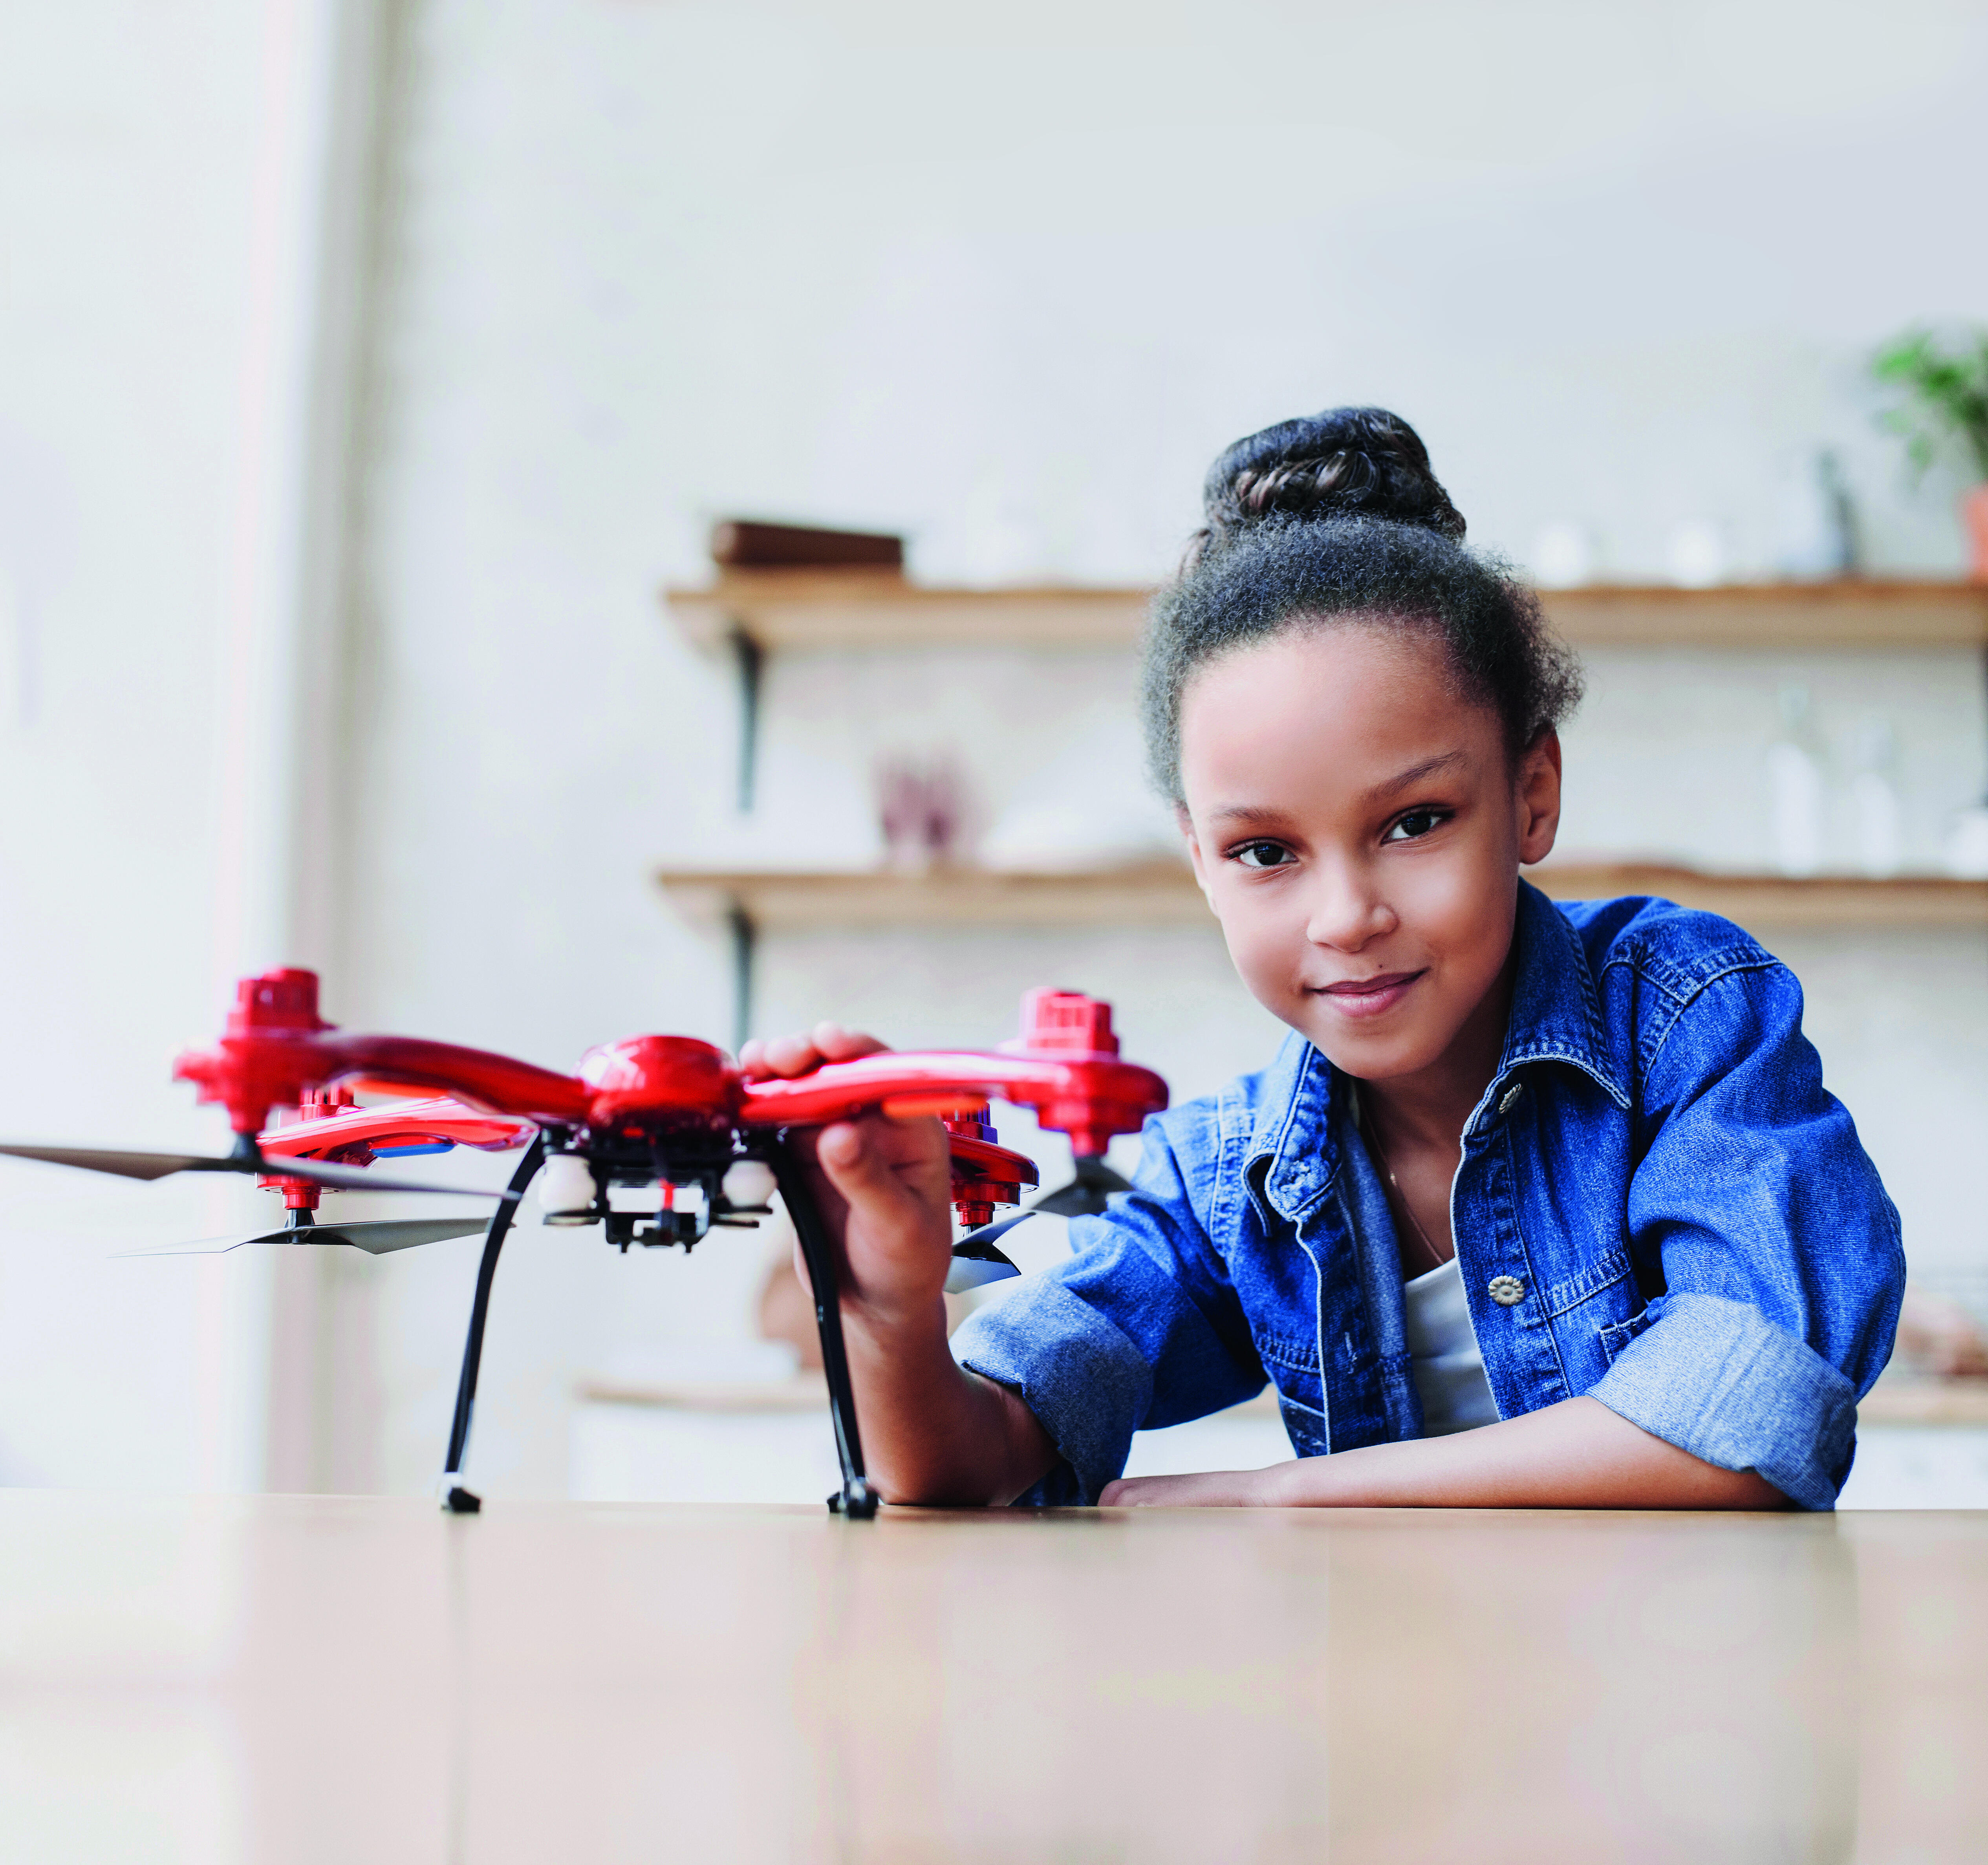 Ein Mädchen sitzt an einem Tisch, vor ihr steht eine Drohne. Bei dem Bild handelt es sich um das Key Visual Motiv des Ada-Lovelace-Projekts Rheinland-Pfalz